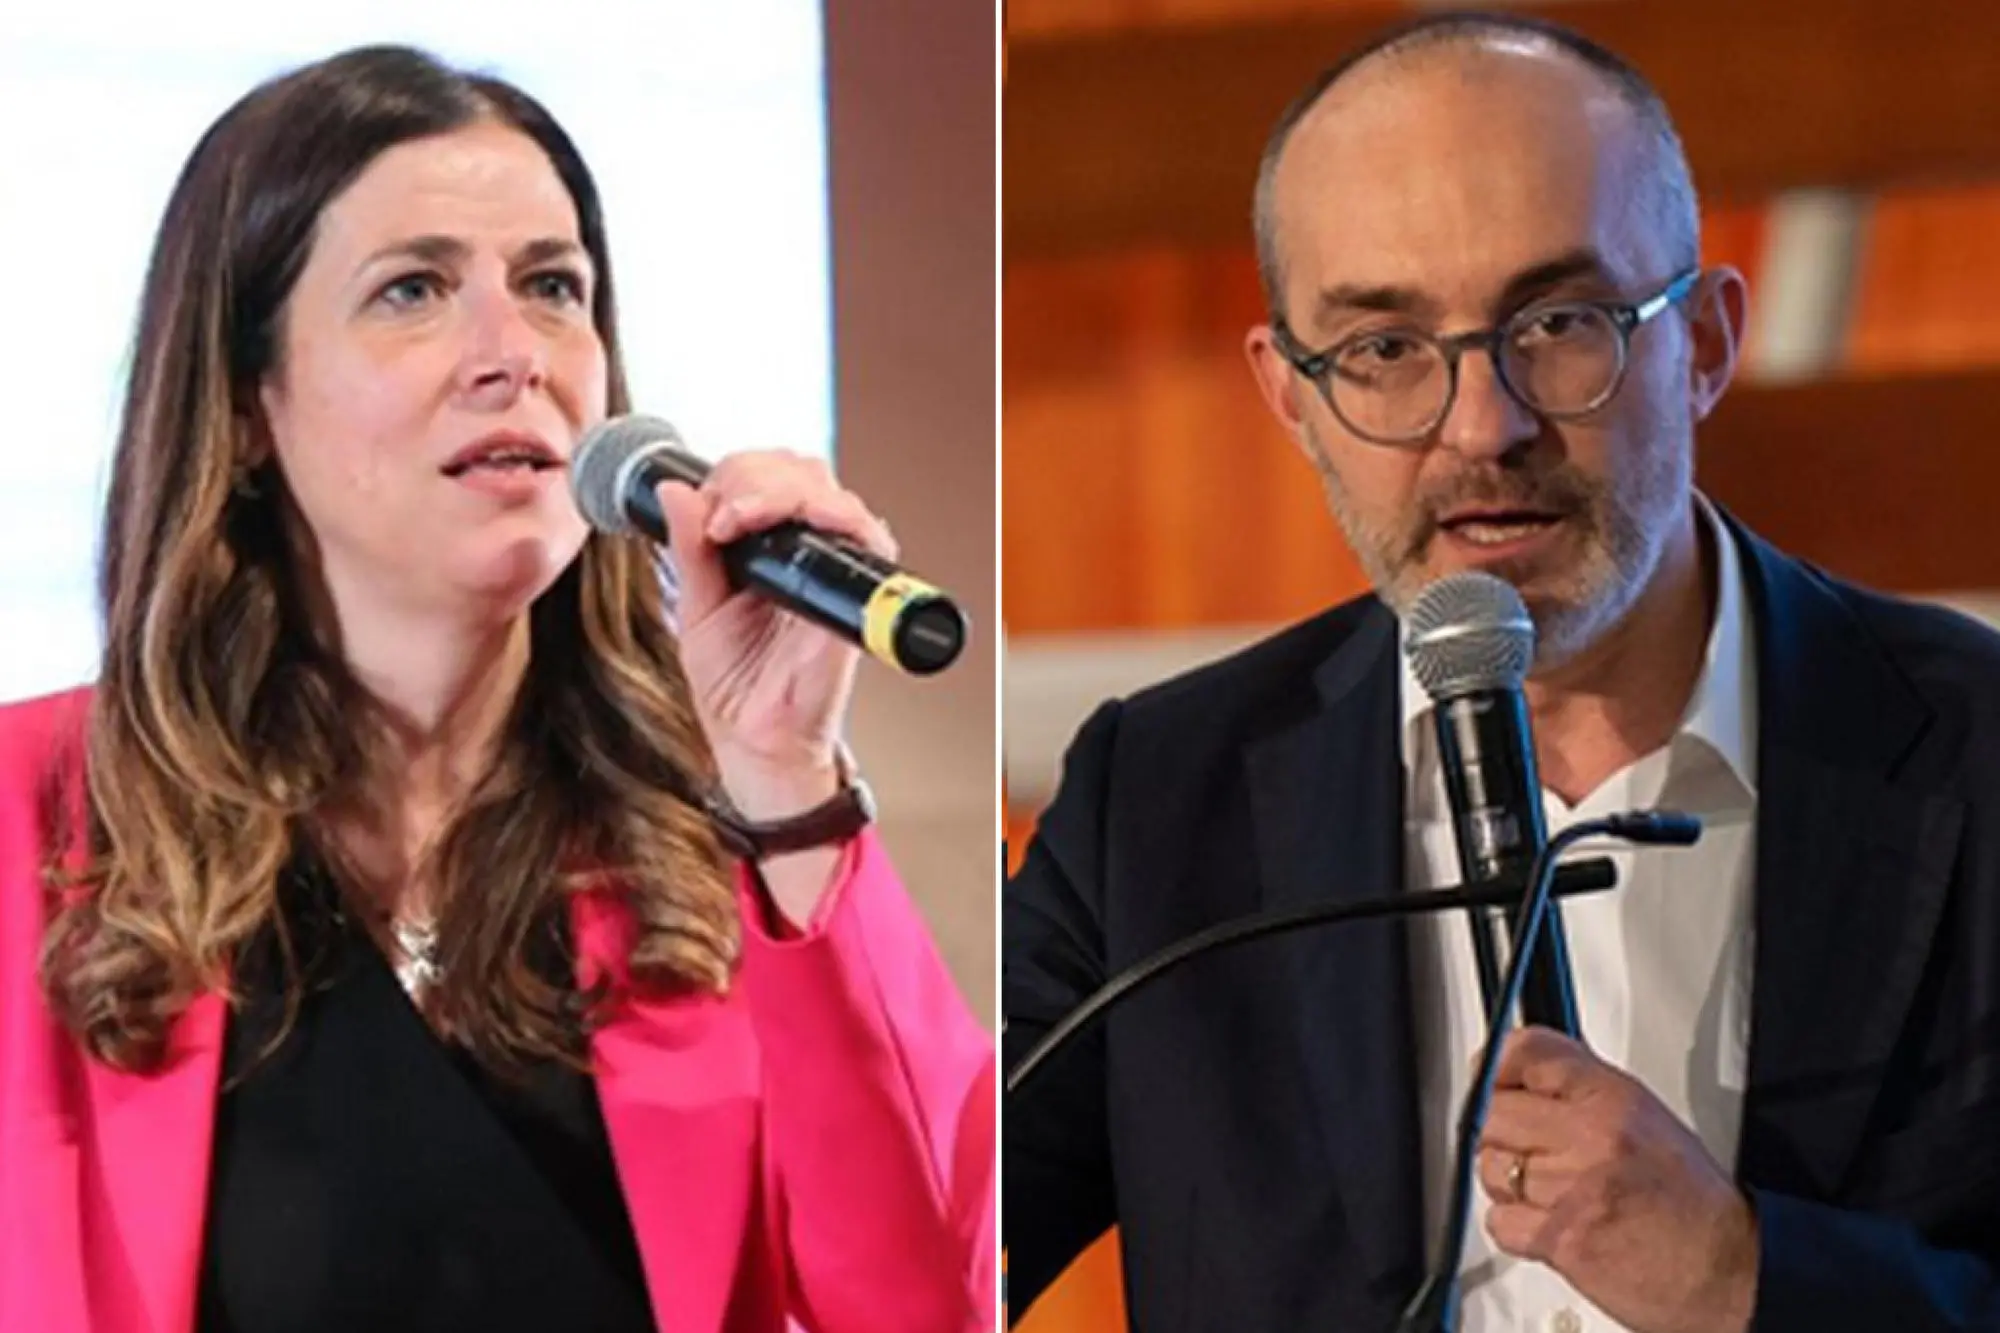 Alessandra Todde, eletta governatrice per il Campo largo, e il candidato del centrodestra Paolo Truzzu